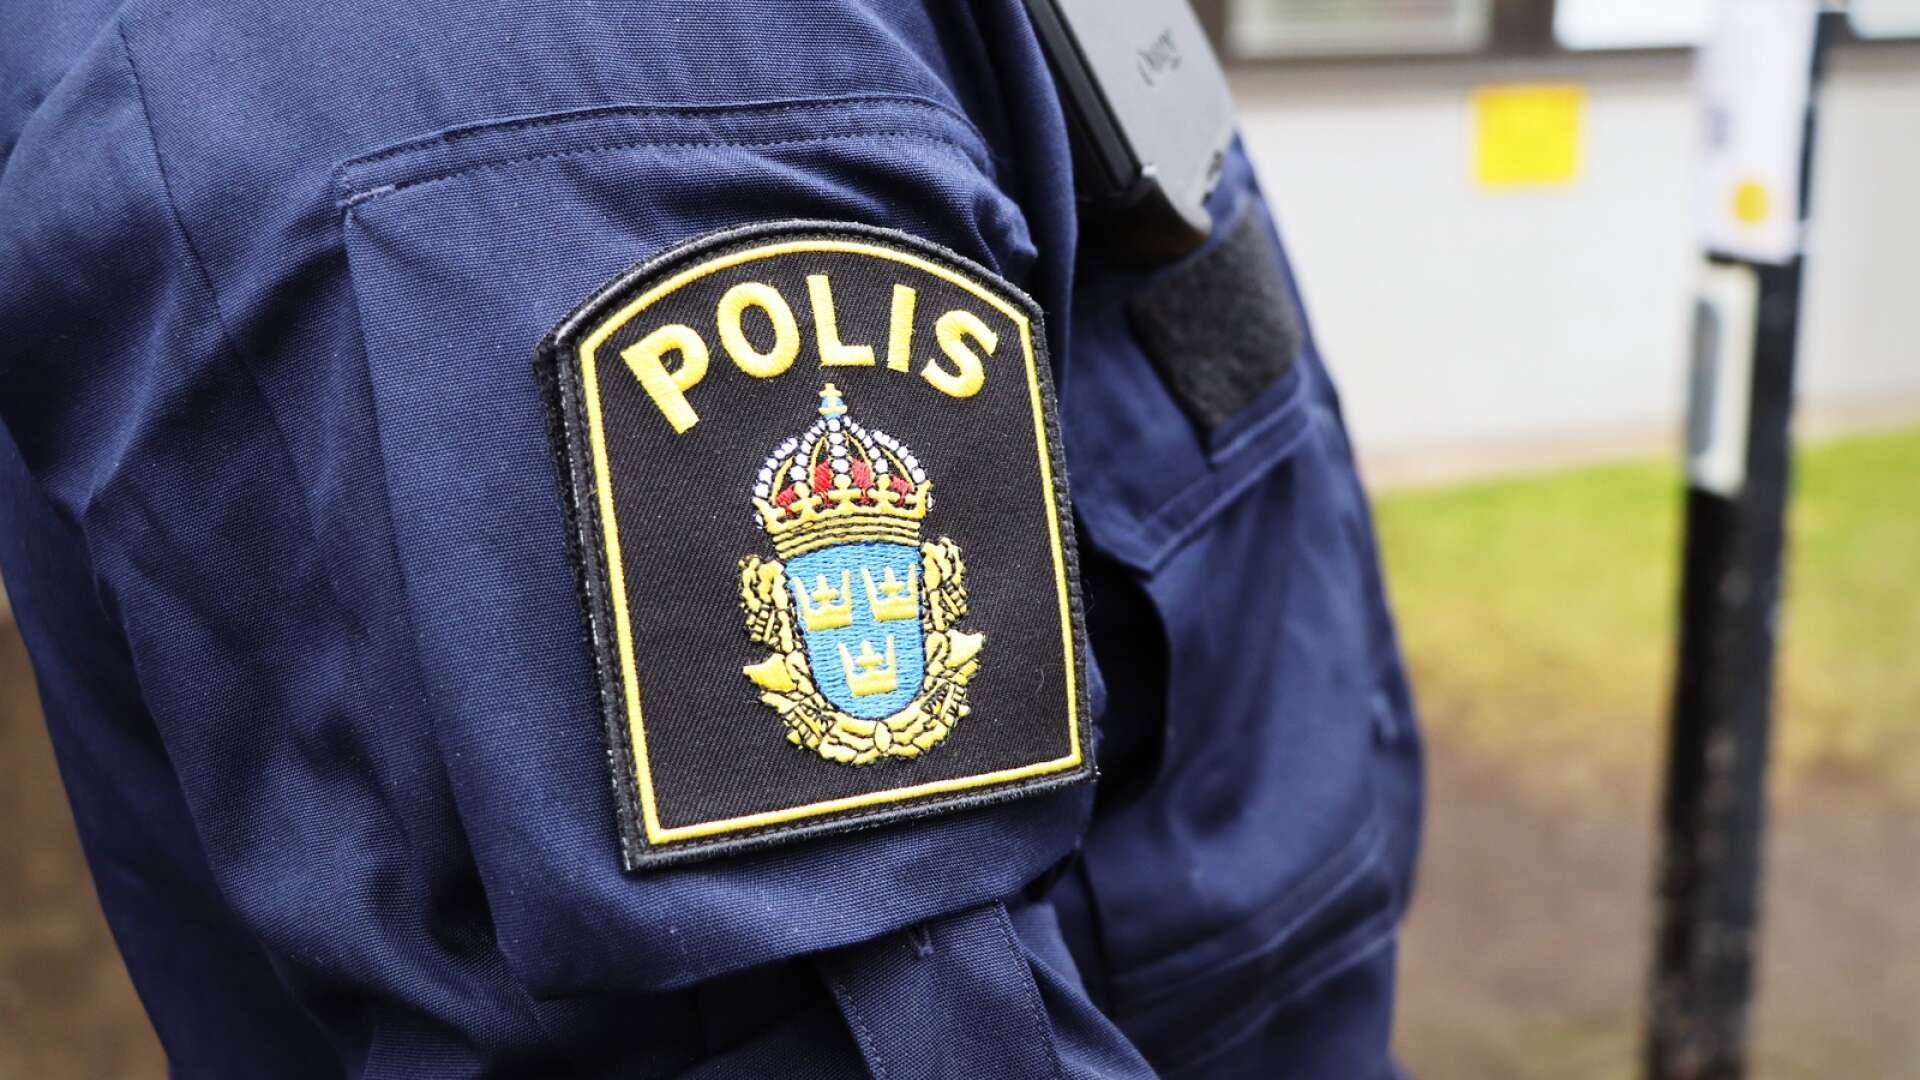 En man boende i västra Värmland stoppades i somras av polis - rattfull på väg hem från krogen. Nu får han sin dom.